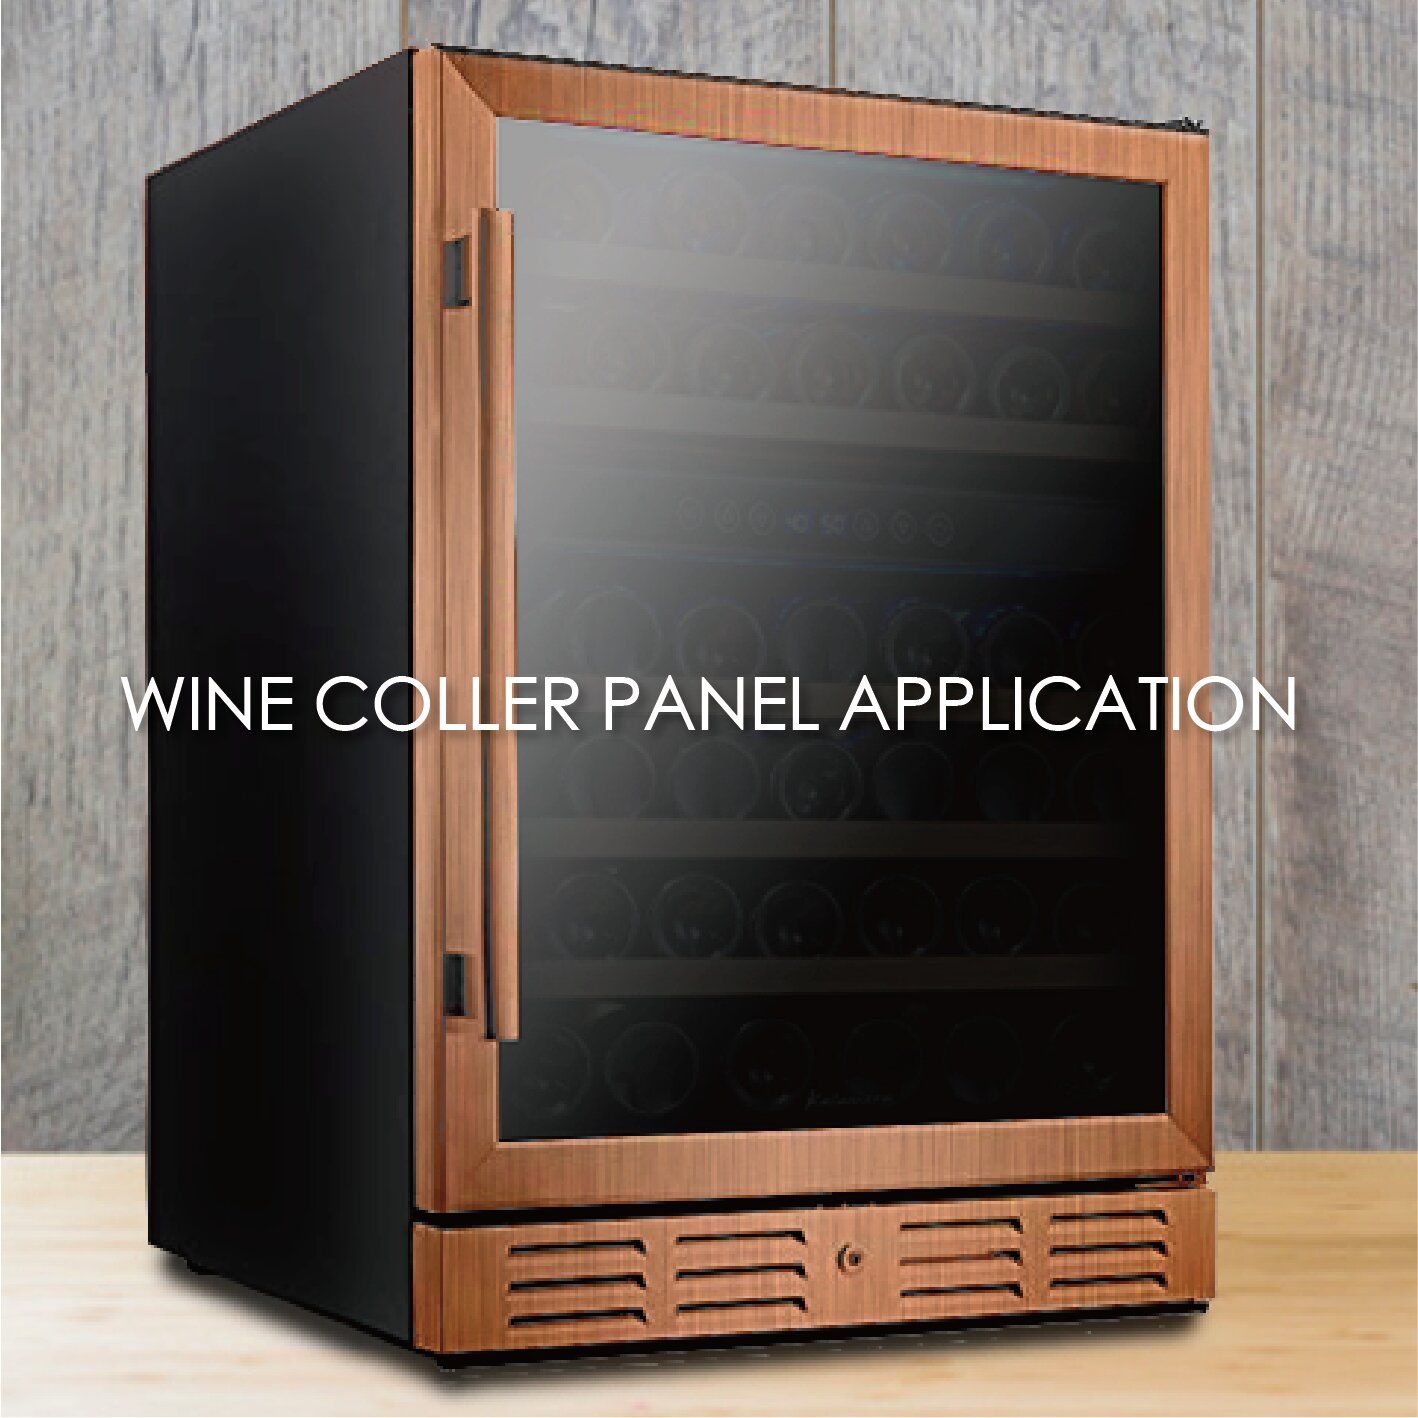 שימוש במתכת מצופה דמוי עץ לייצור פאנלים למקרר יין יכול להגביר את האסתטיקה והעמידות